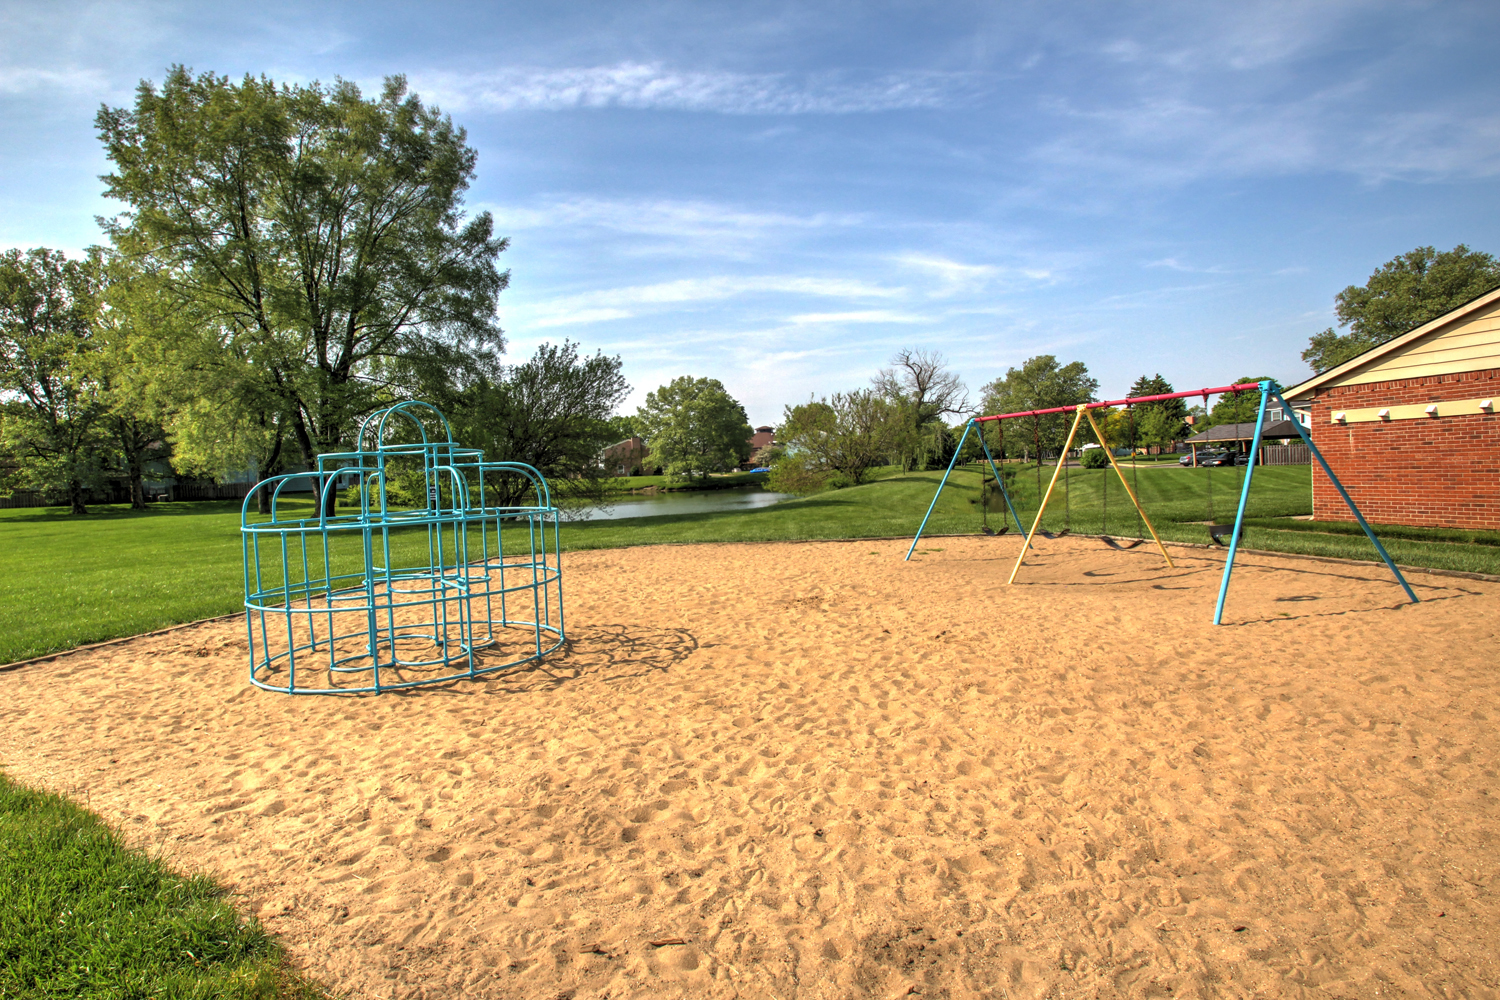 Children's outdoor play area